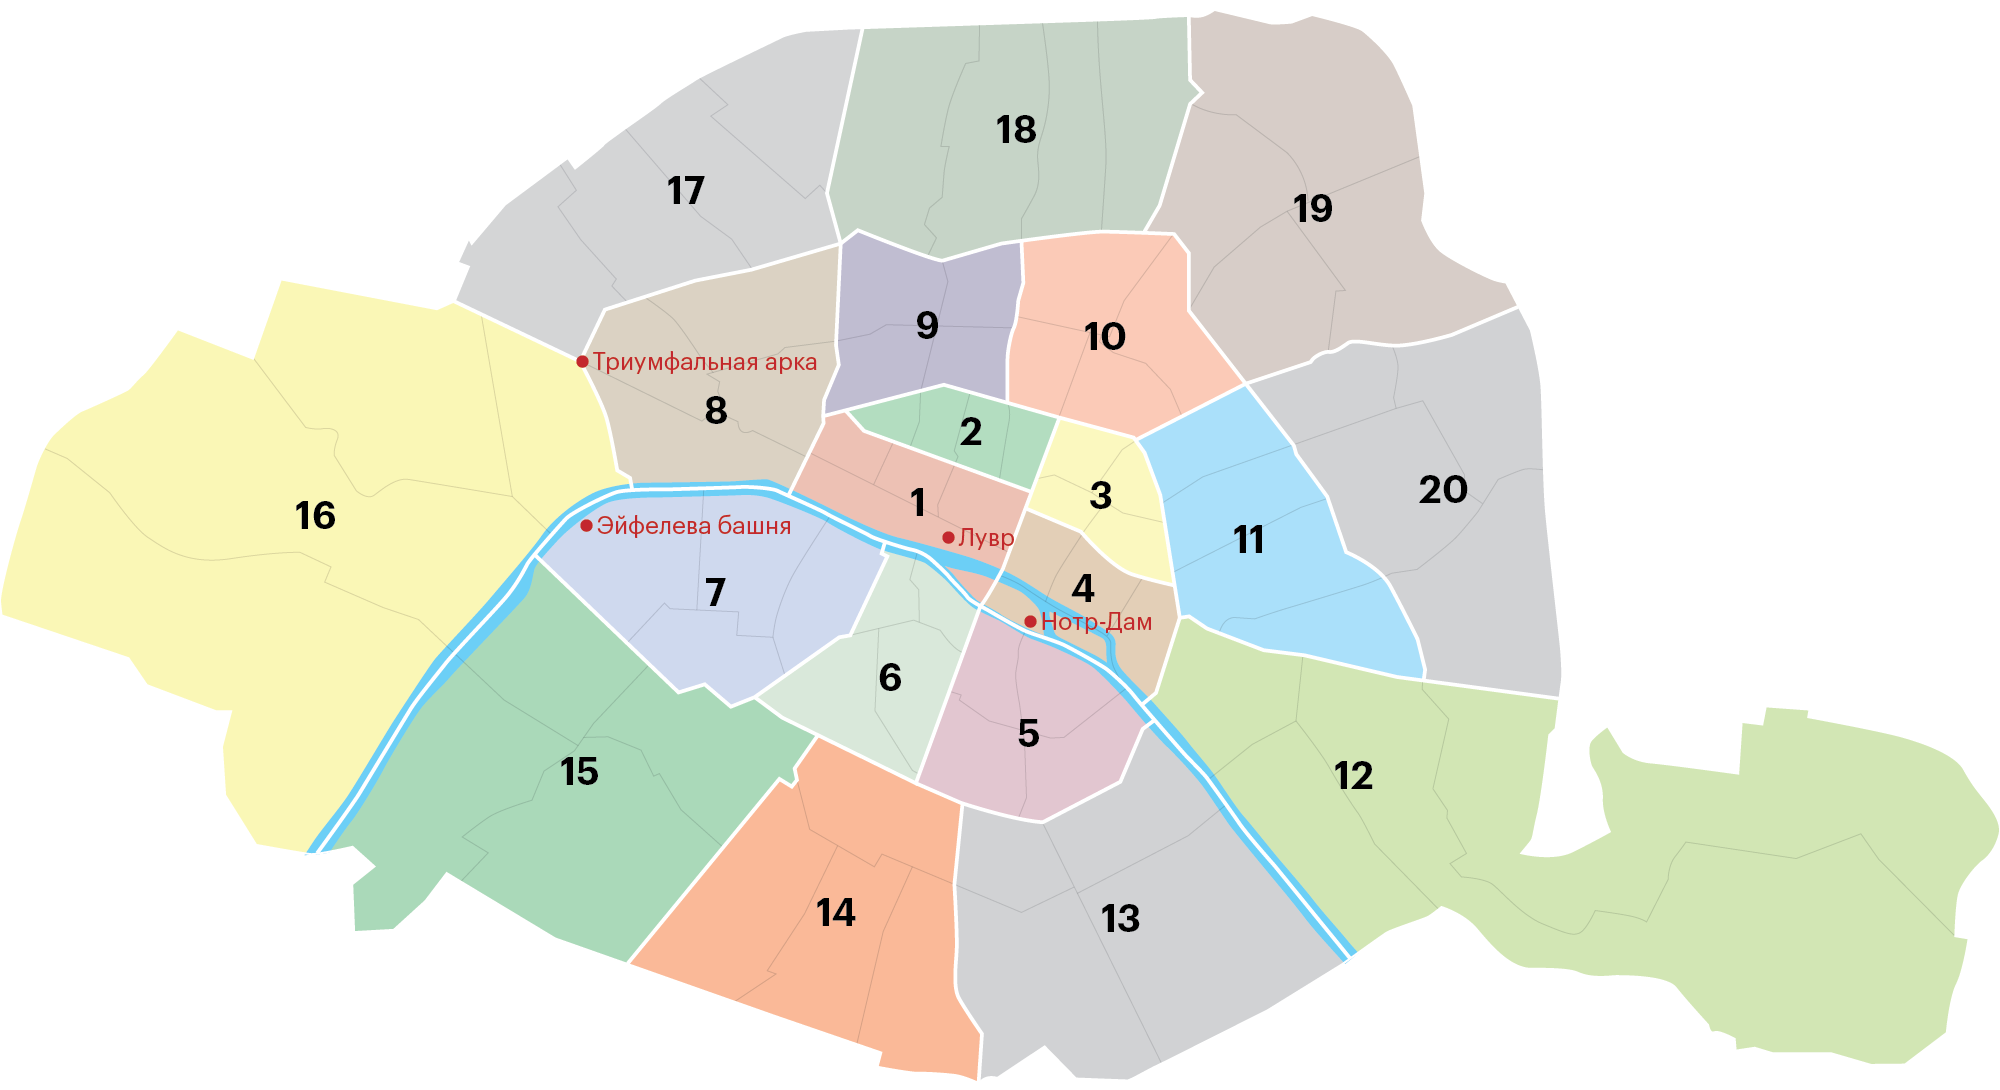 Париж разделен на 20 районов — по-французски «аррондисман». Их так и называют — по номерам. Самыми элитными считаются с первого по седьмой — это исторический центр города. Они расходятся от Нотр-Дама по часовой стрелке, как рисунок на раковине у улитки